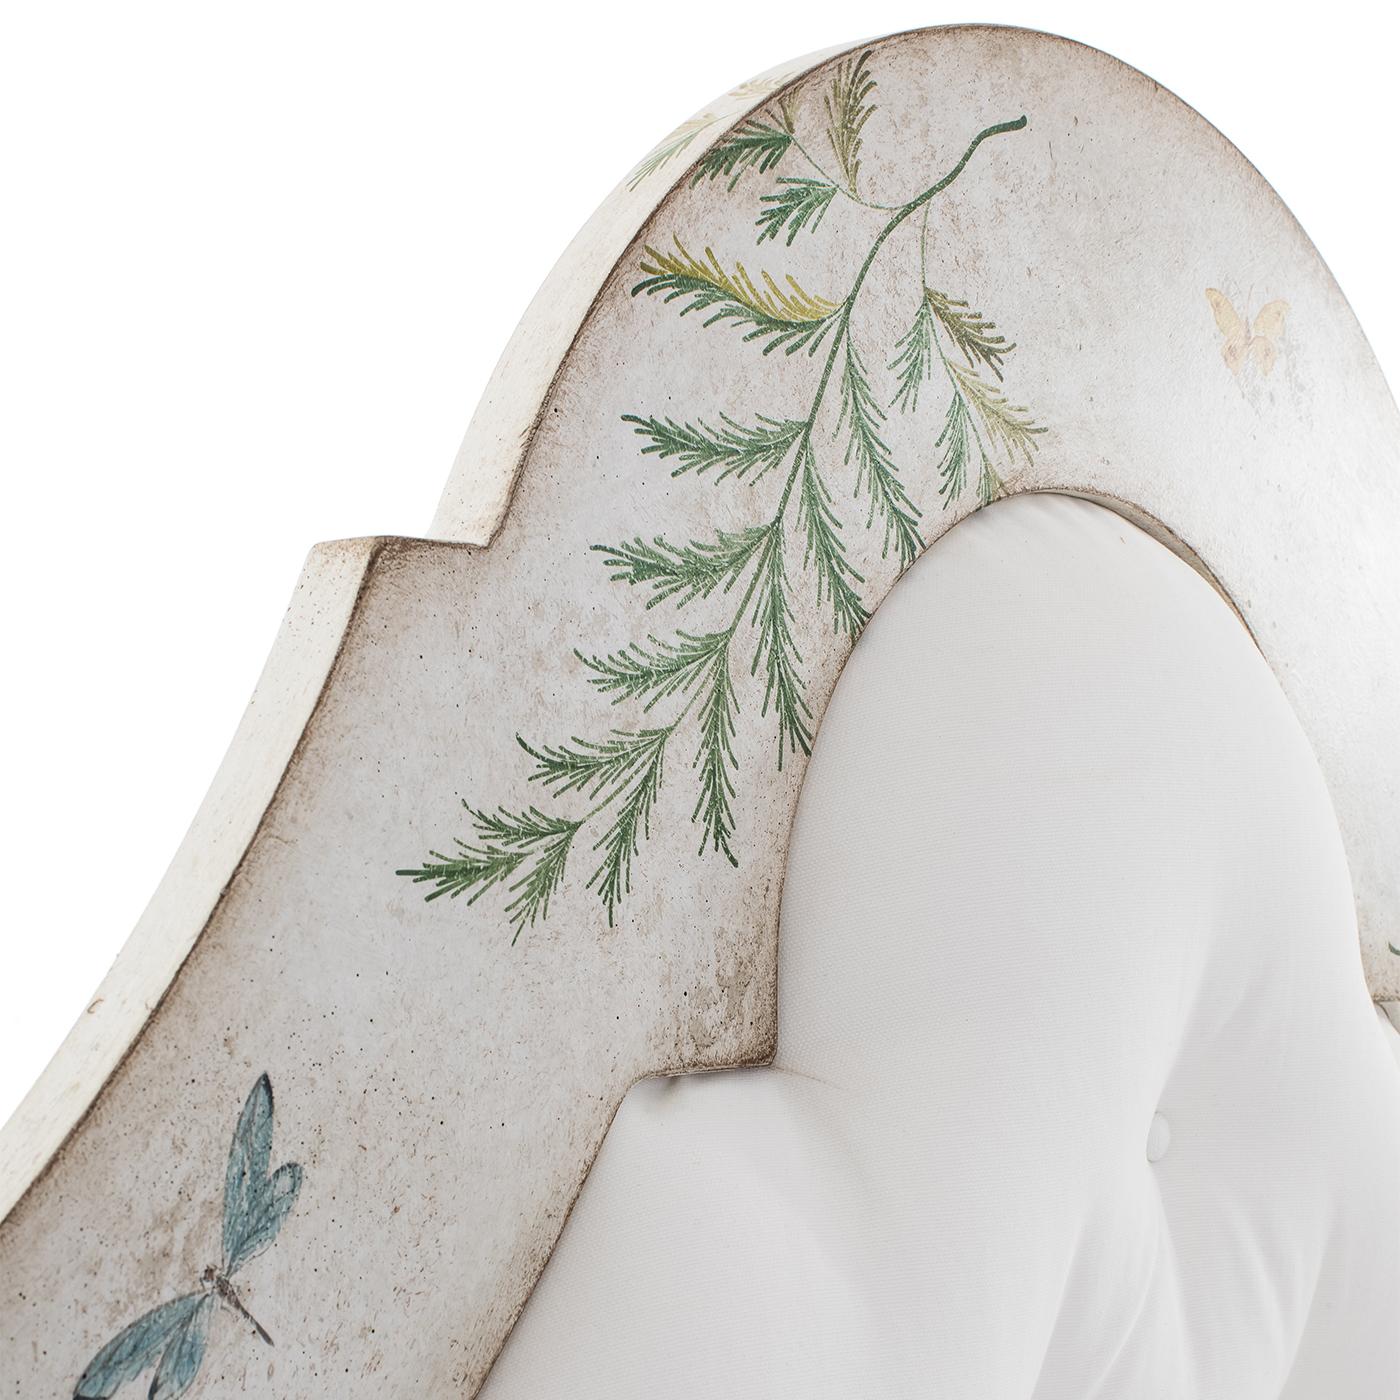 Voici le Bamboo Roma Bed, un lit à baldaquin fantaisiste qui allie romantisme et élégance intemporelle. Peint à la main en blanc avec des bambous vert pomme et de délicates fougères et papillons, ce lit personnalisable est une pièce d'apparat qui